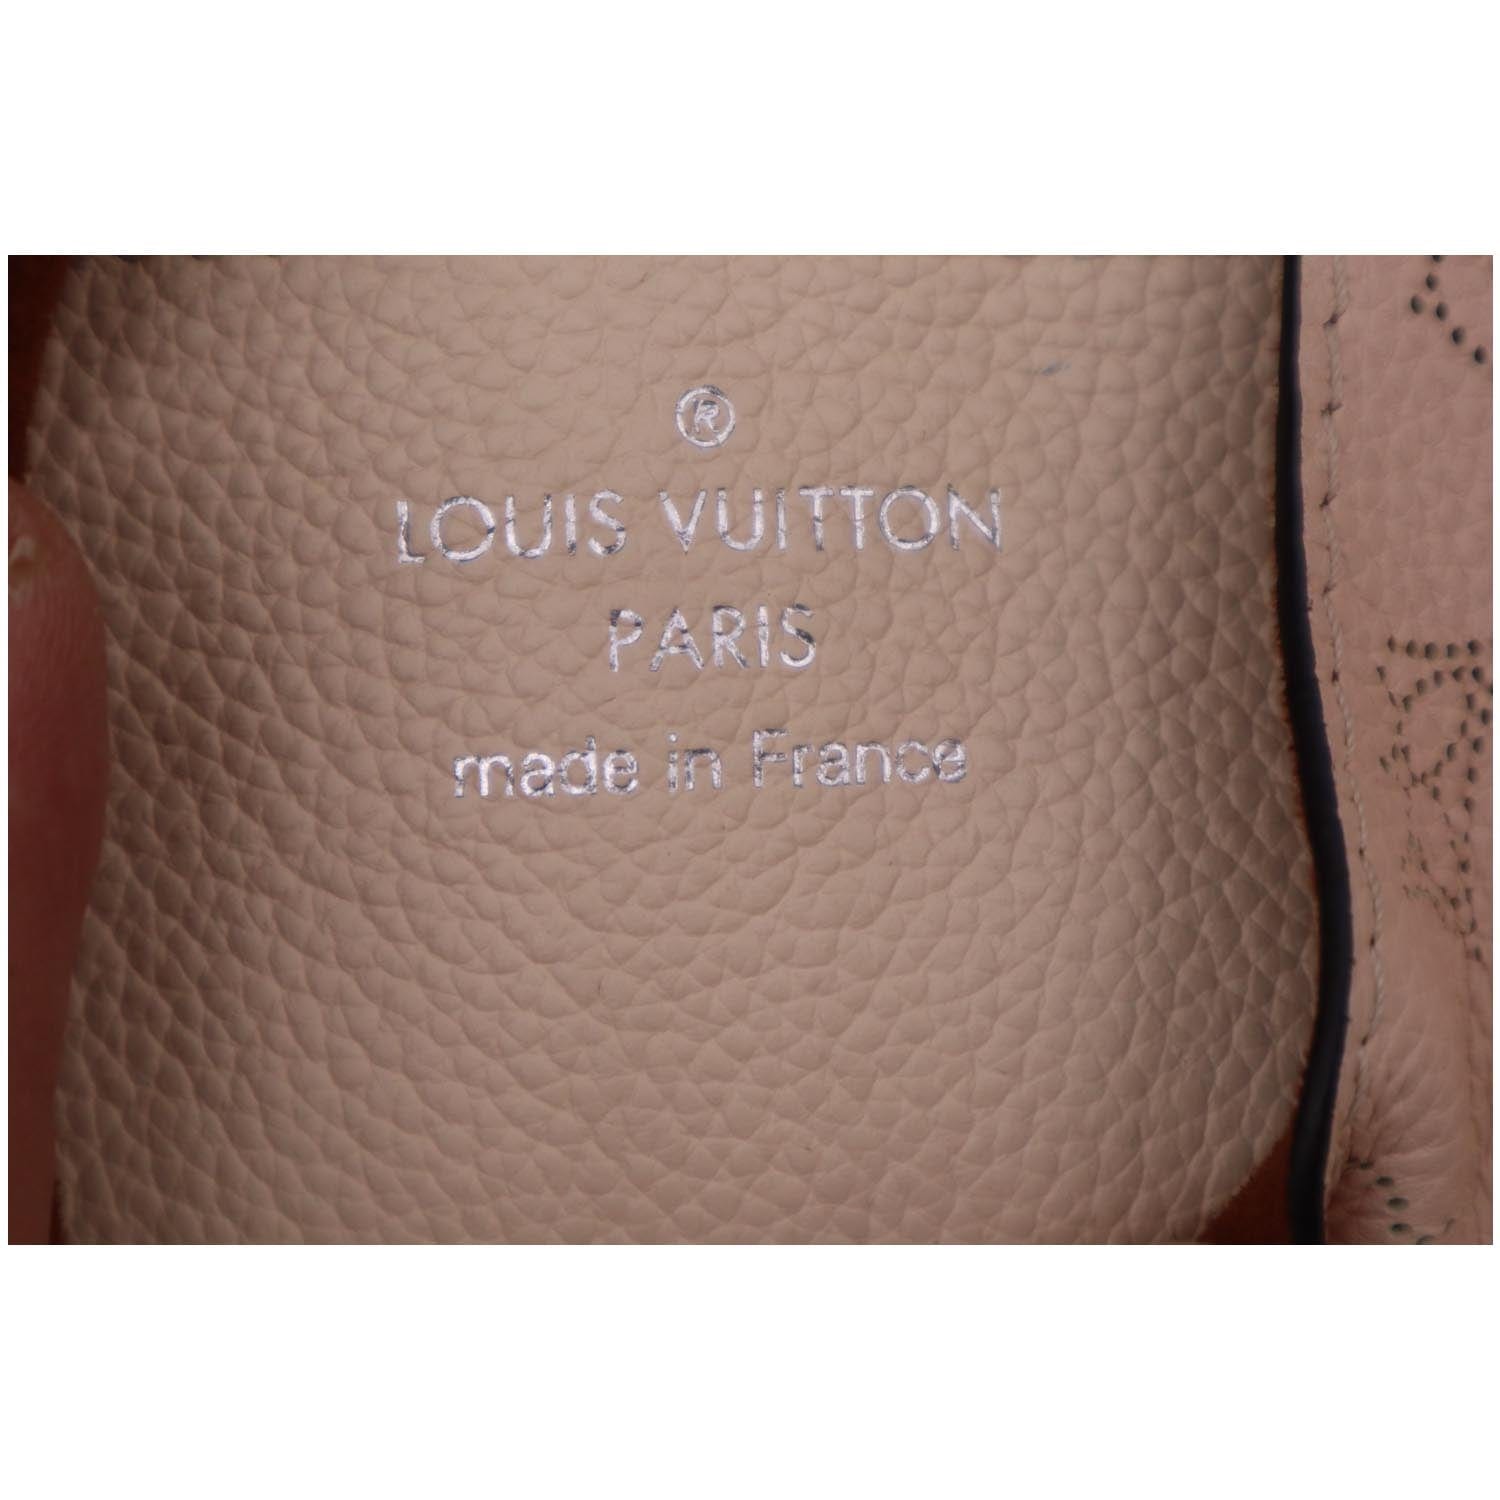 Louis Vuitton Carmel Mahina Hobo Bag Cream